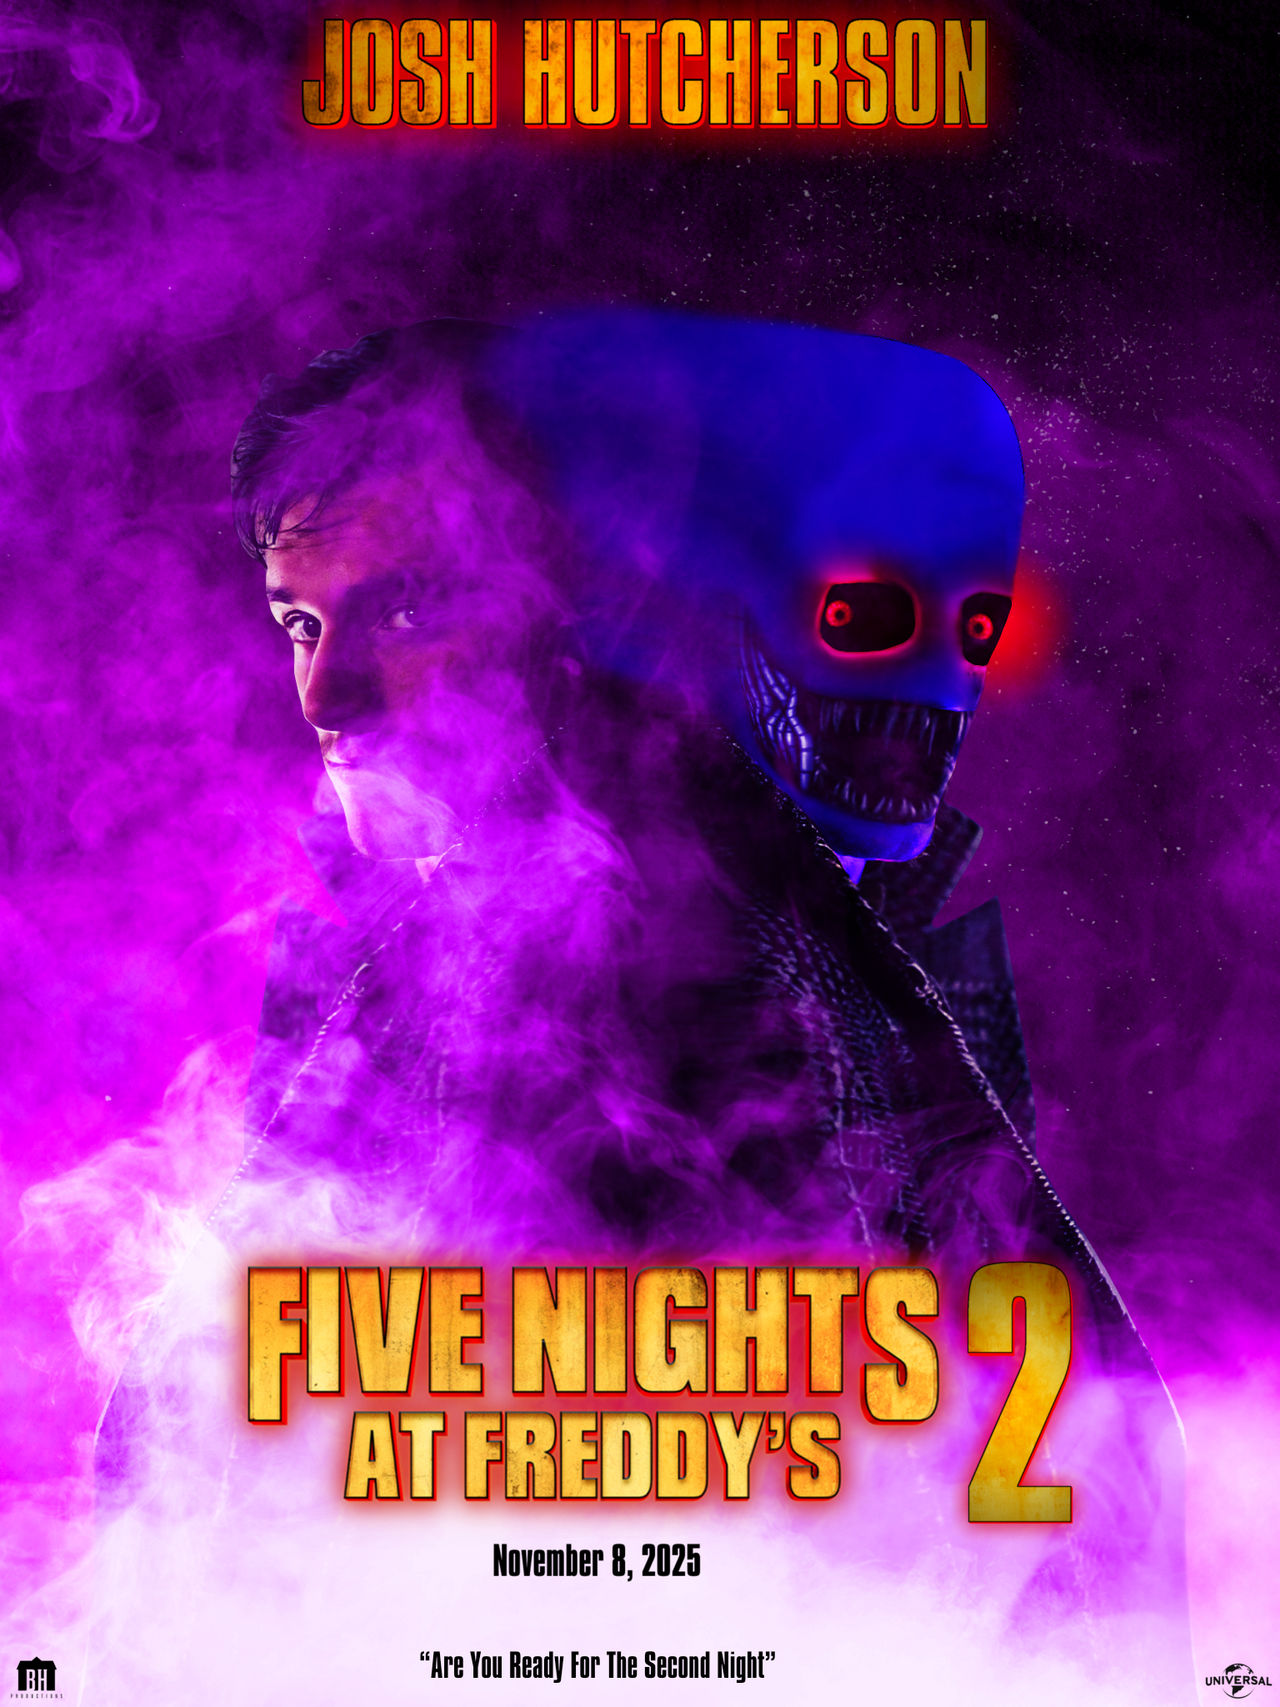 FNaF 2 The Movie Poster V2 by zerodigitalartsYmore on DeviantArt